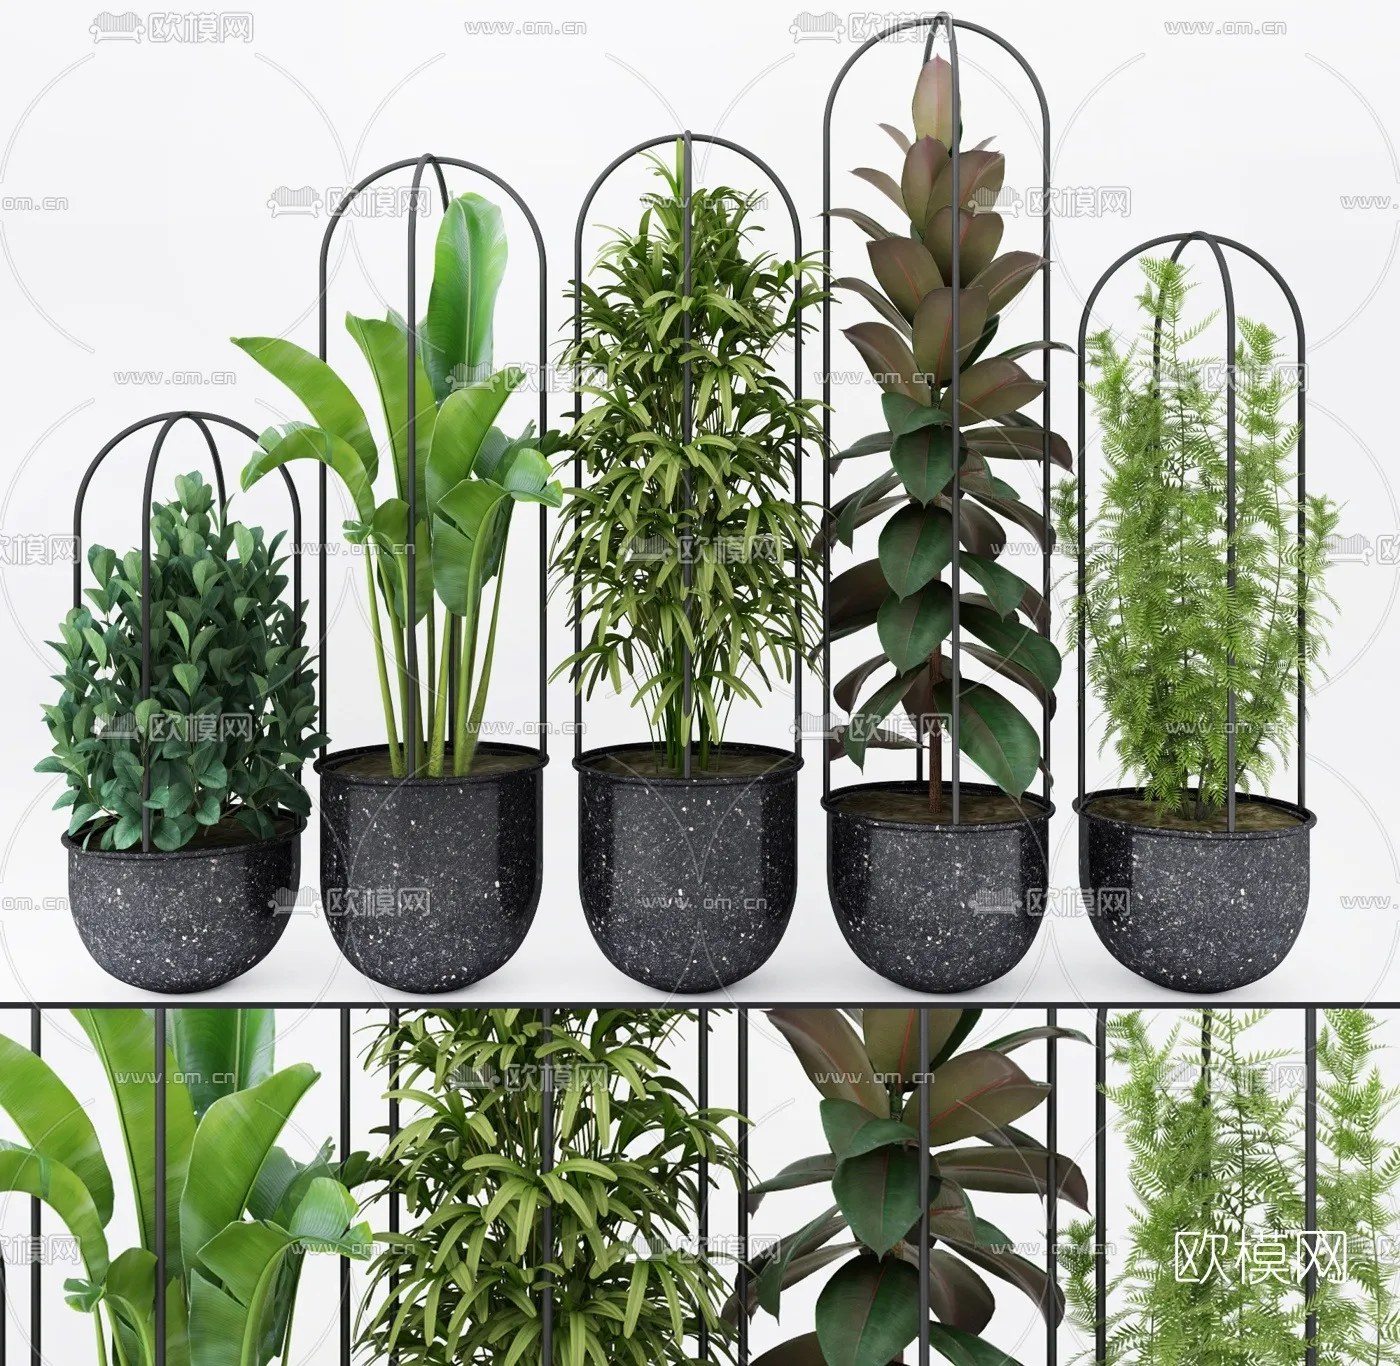 PLANT 3D MODELS – 045